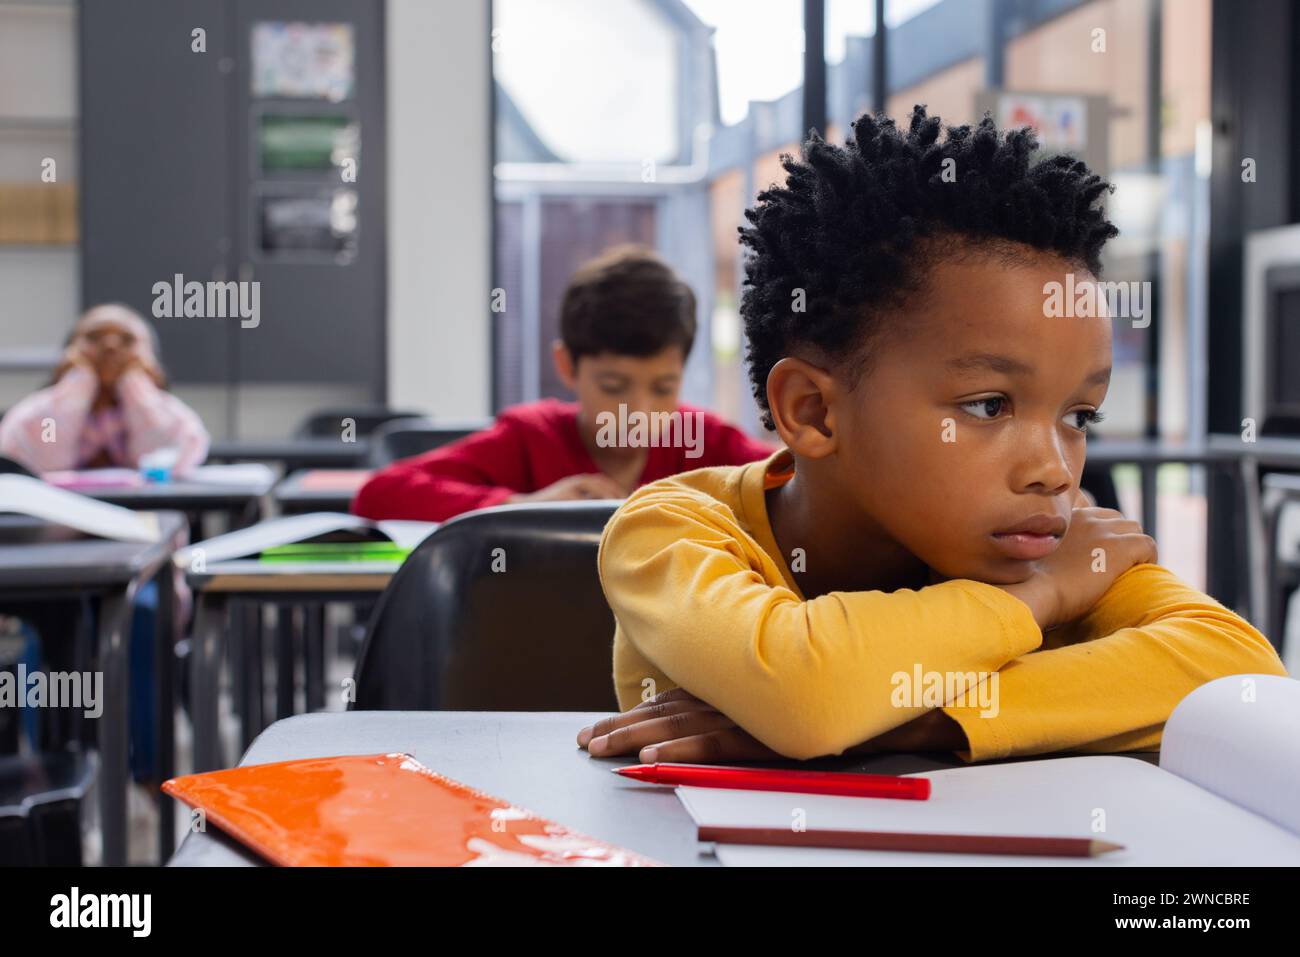 Garçon afro-américain dans une chemise jaune semble triste dans un cadre de classe avec espace de copie Banque D'Images